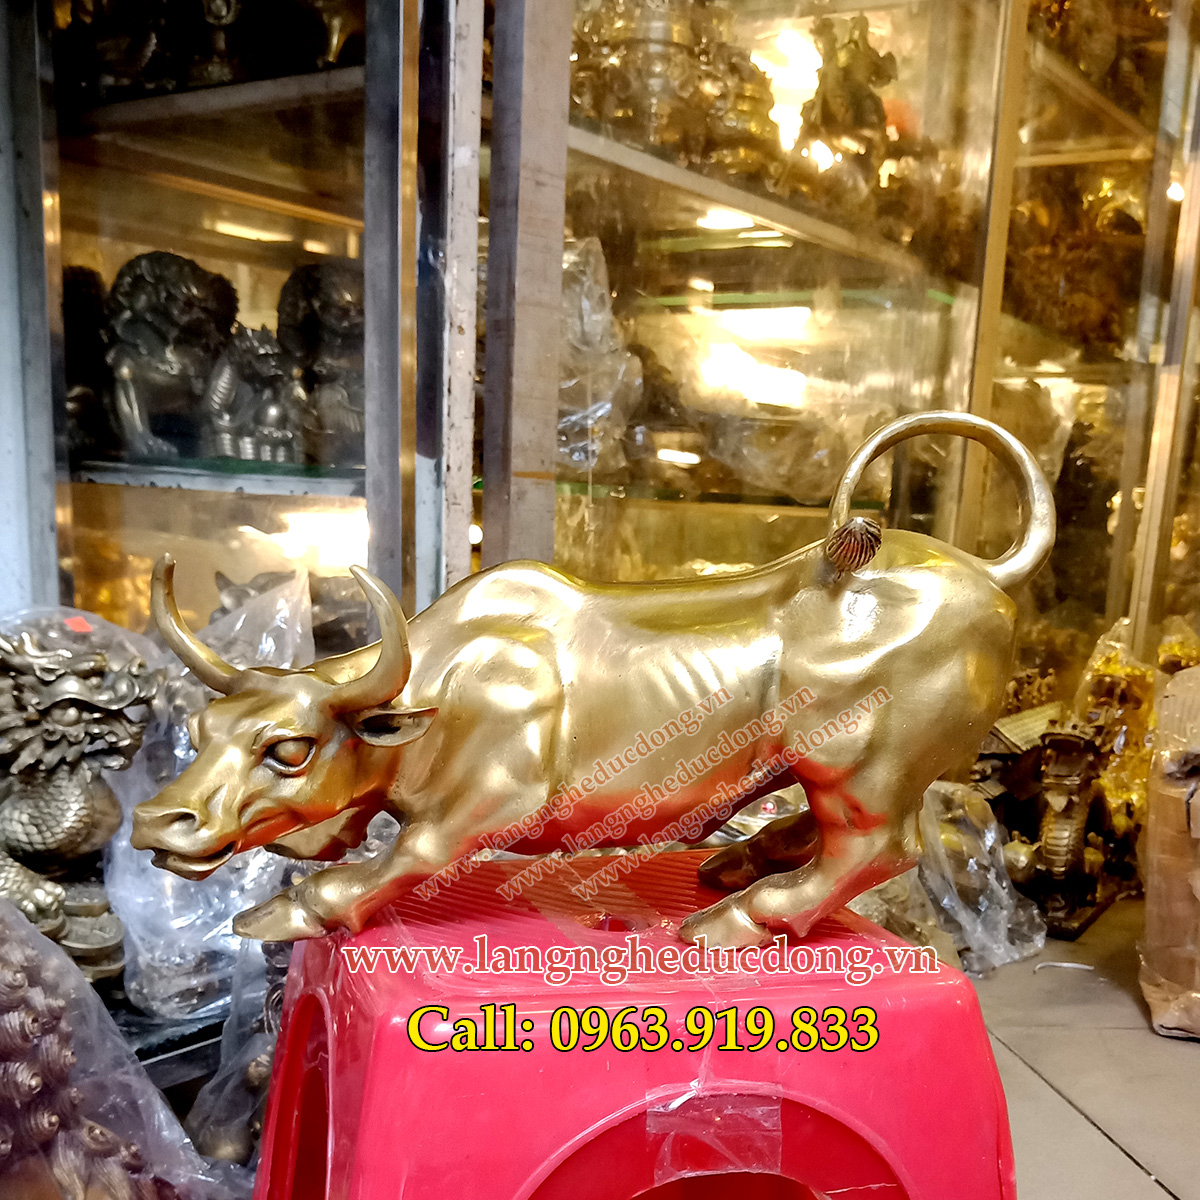 langngheducdong.vn - ngựa đồng, ngựa phong thủy, ngựa mạ vàng, tượng đồng mạ vàng, vật phẩm phong thủy mạ vàng